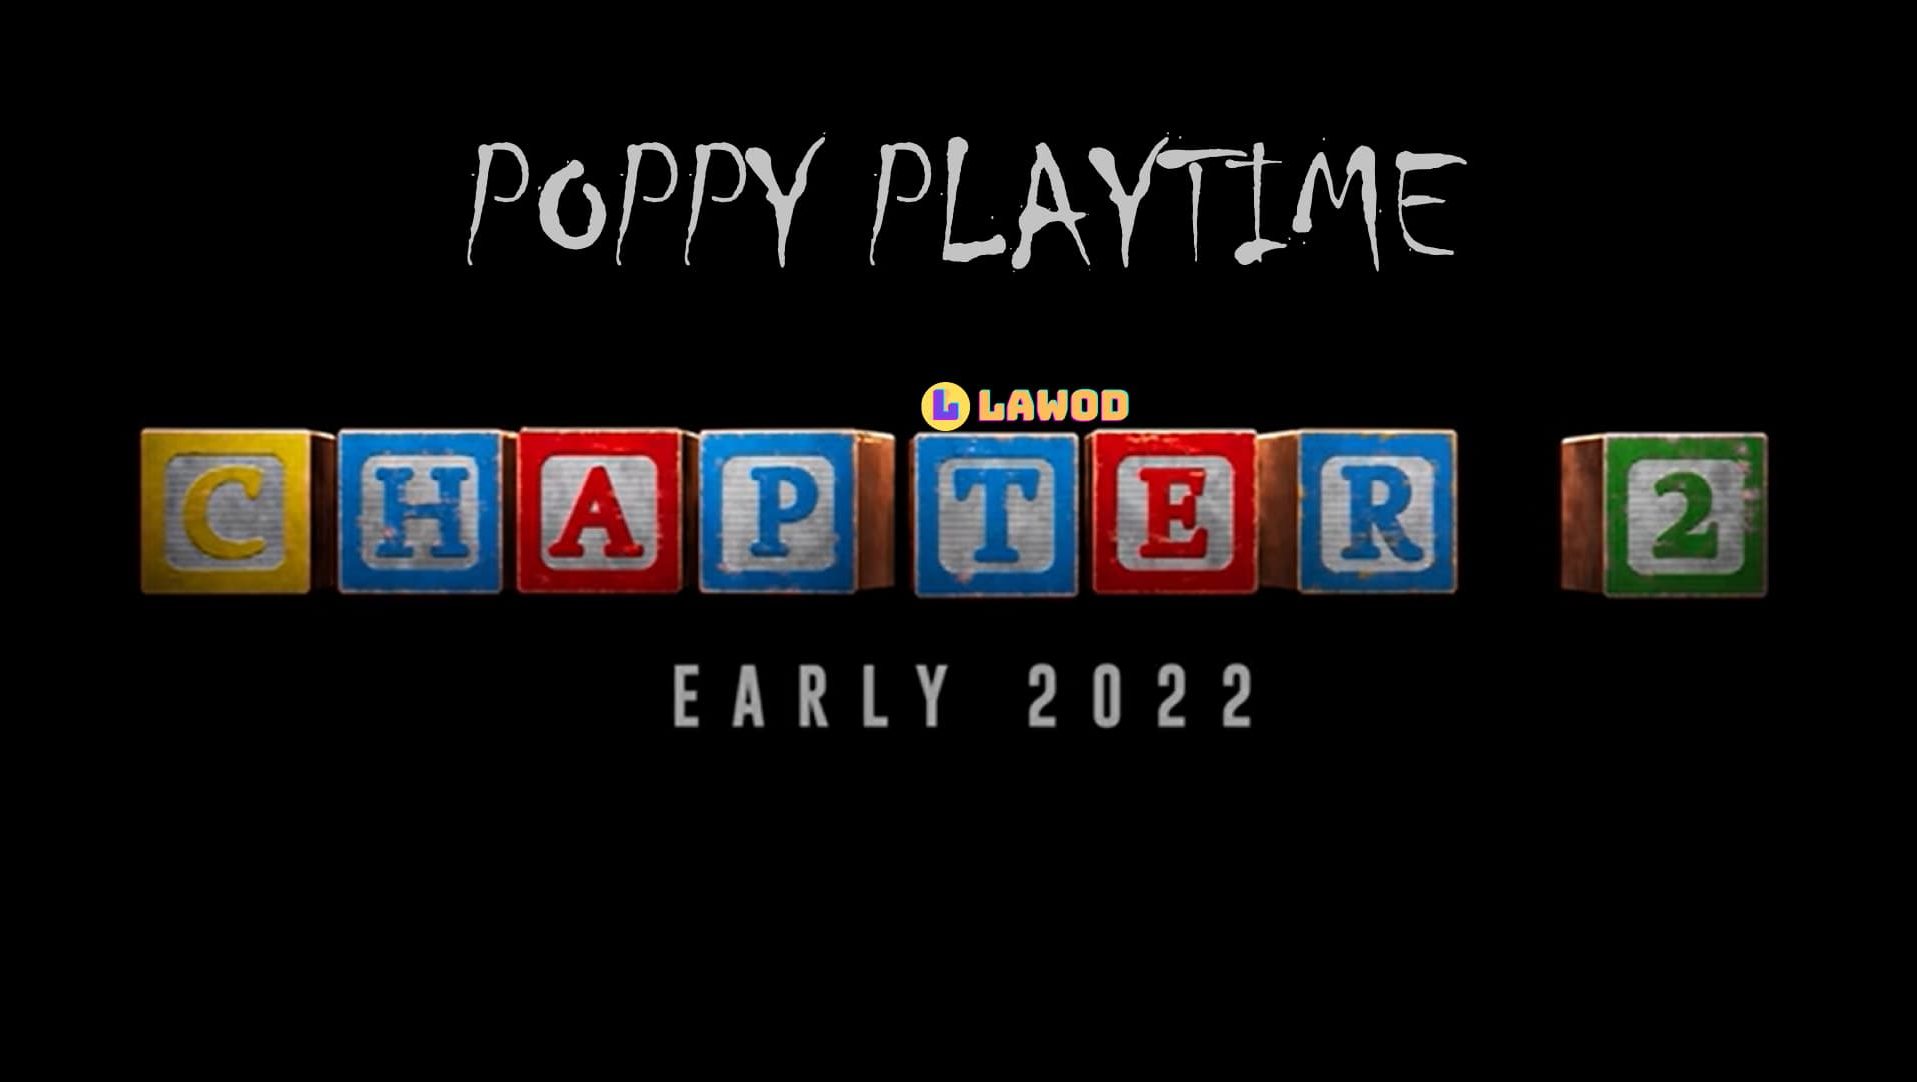 Poppy playtime nintendo. Poppy Playtime 2 часть. Poppy Playtime логотип. Poppy Play time 3. Poppy Playtime надпись.